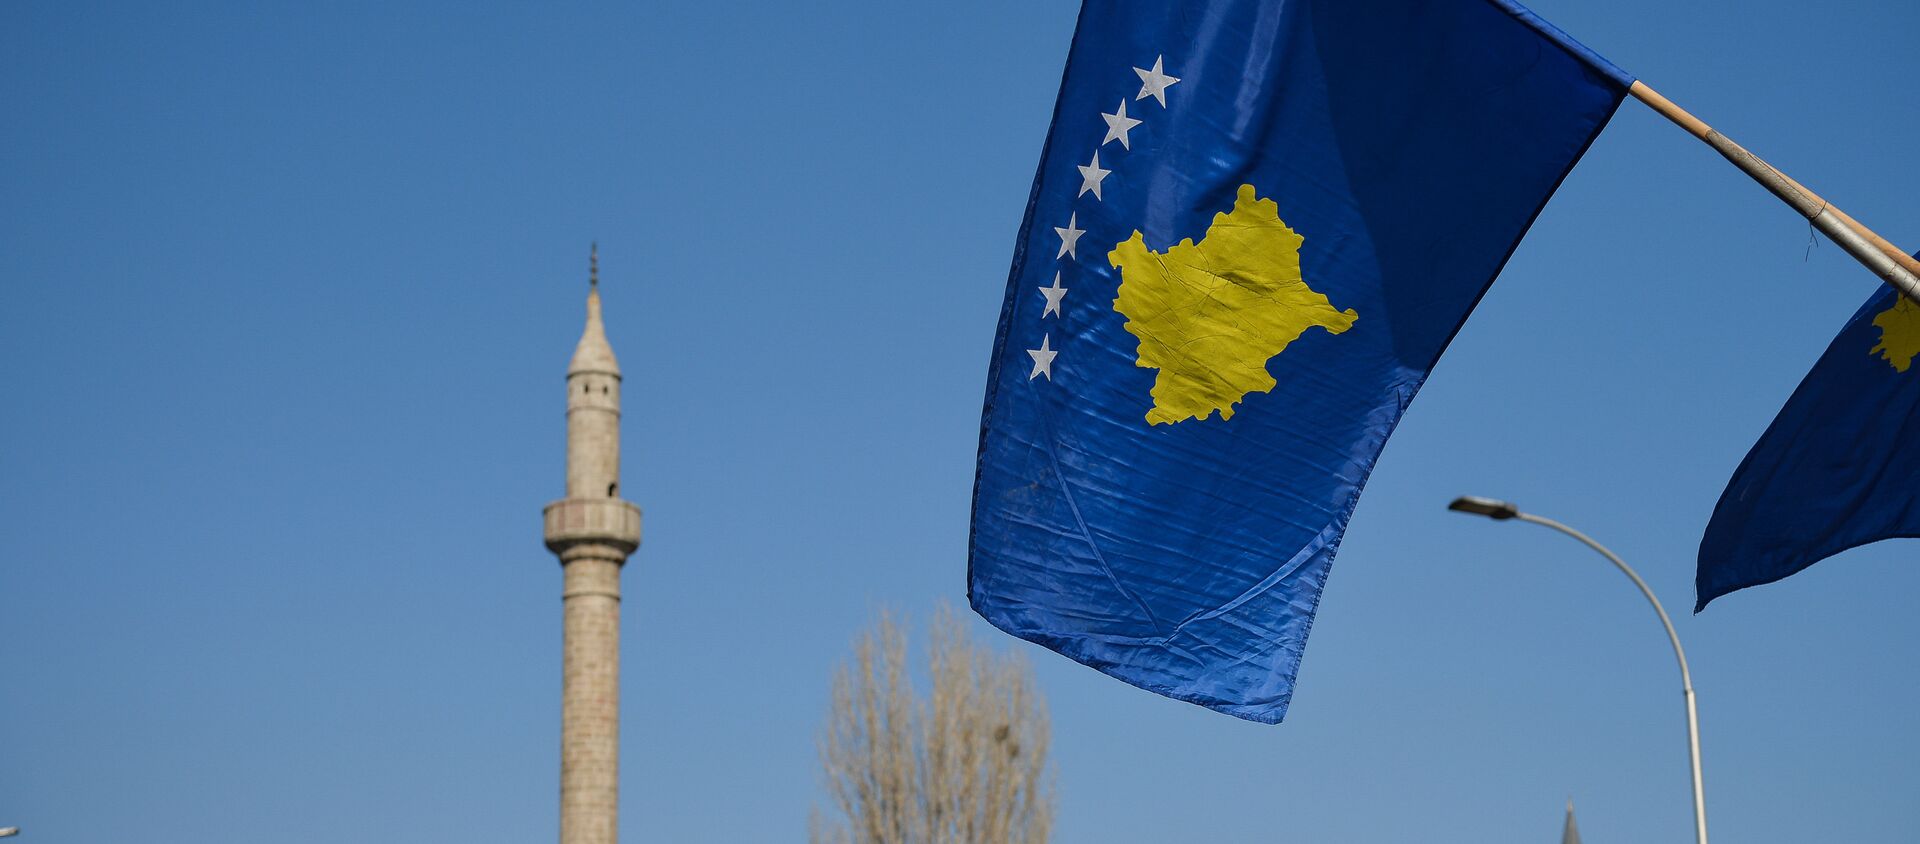 Bandera de Kosovo en Pristina - Sputnik Mundo, 1920, 22.11.2019